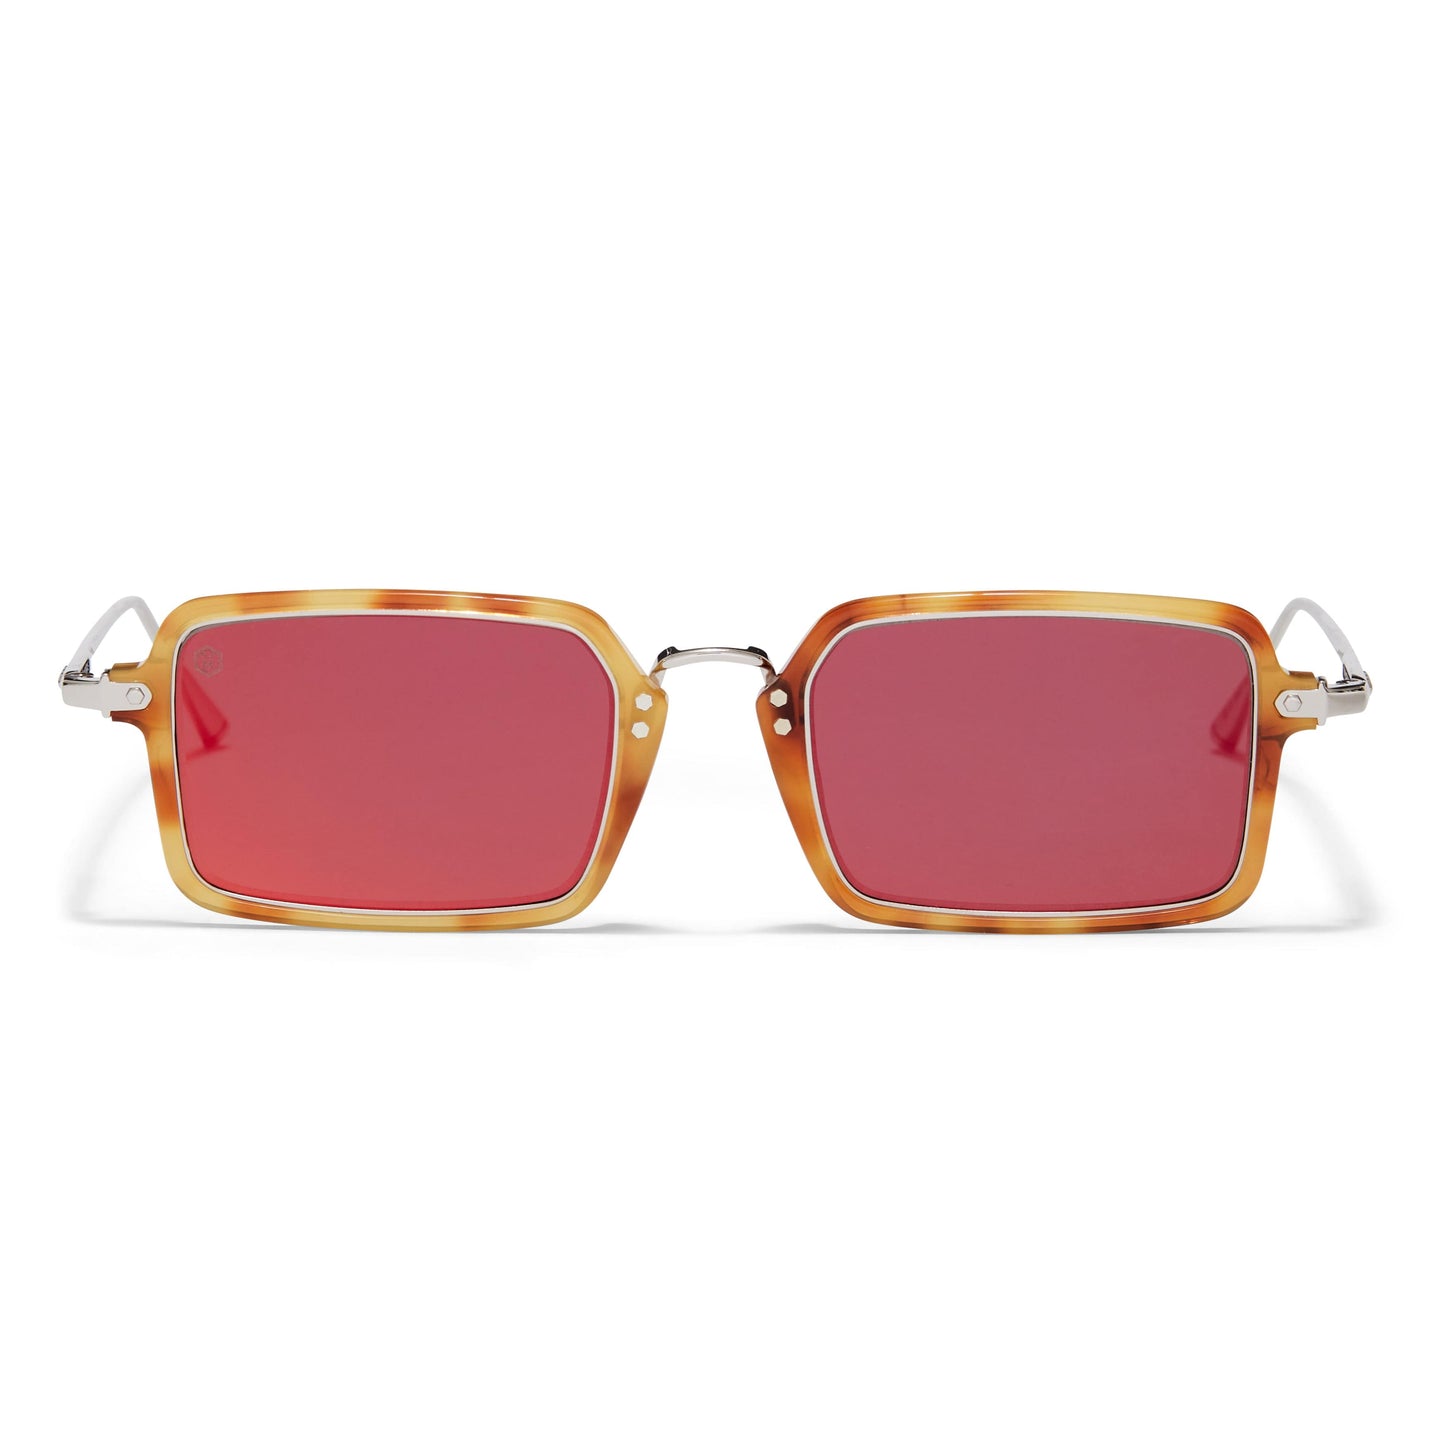 Portobello Sunglasses